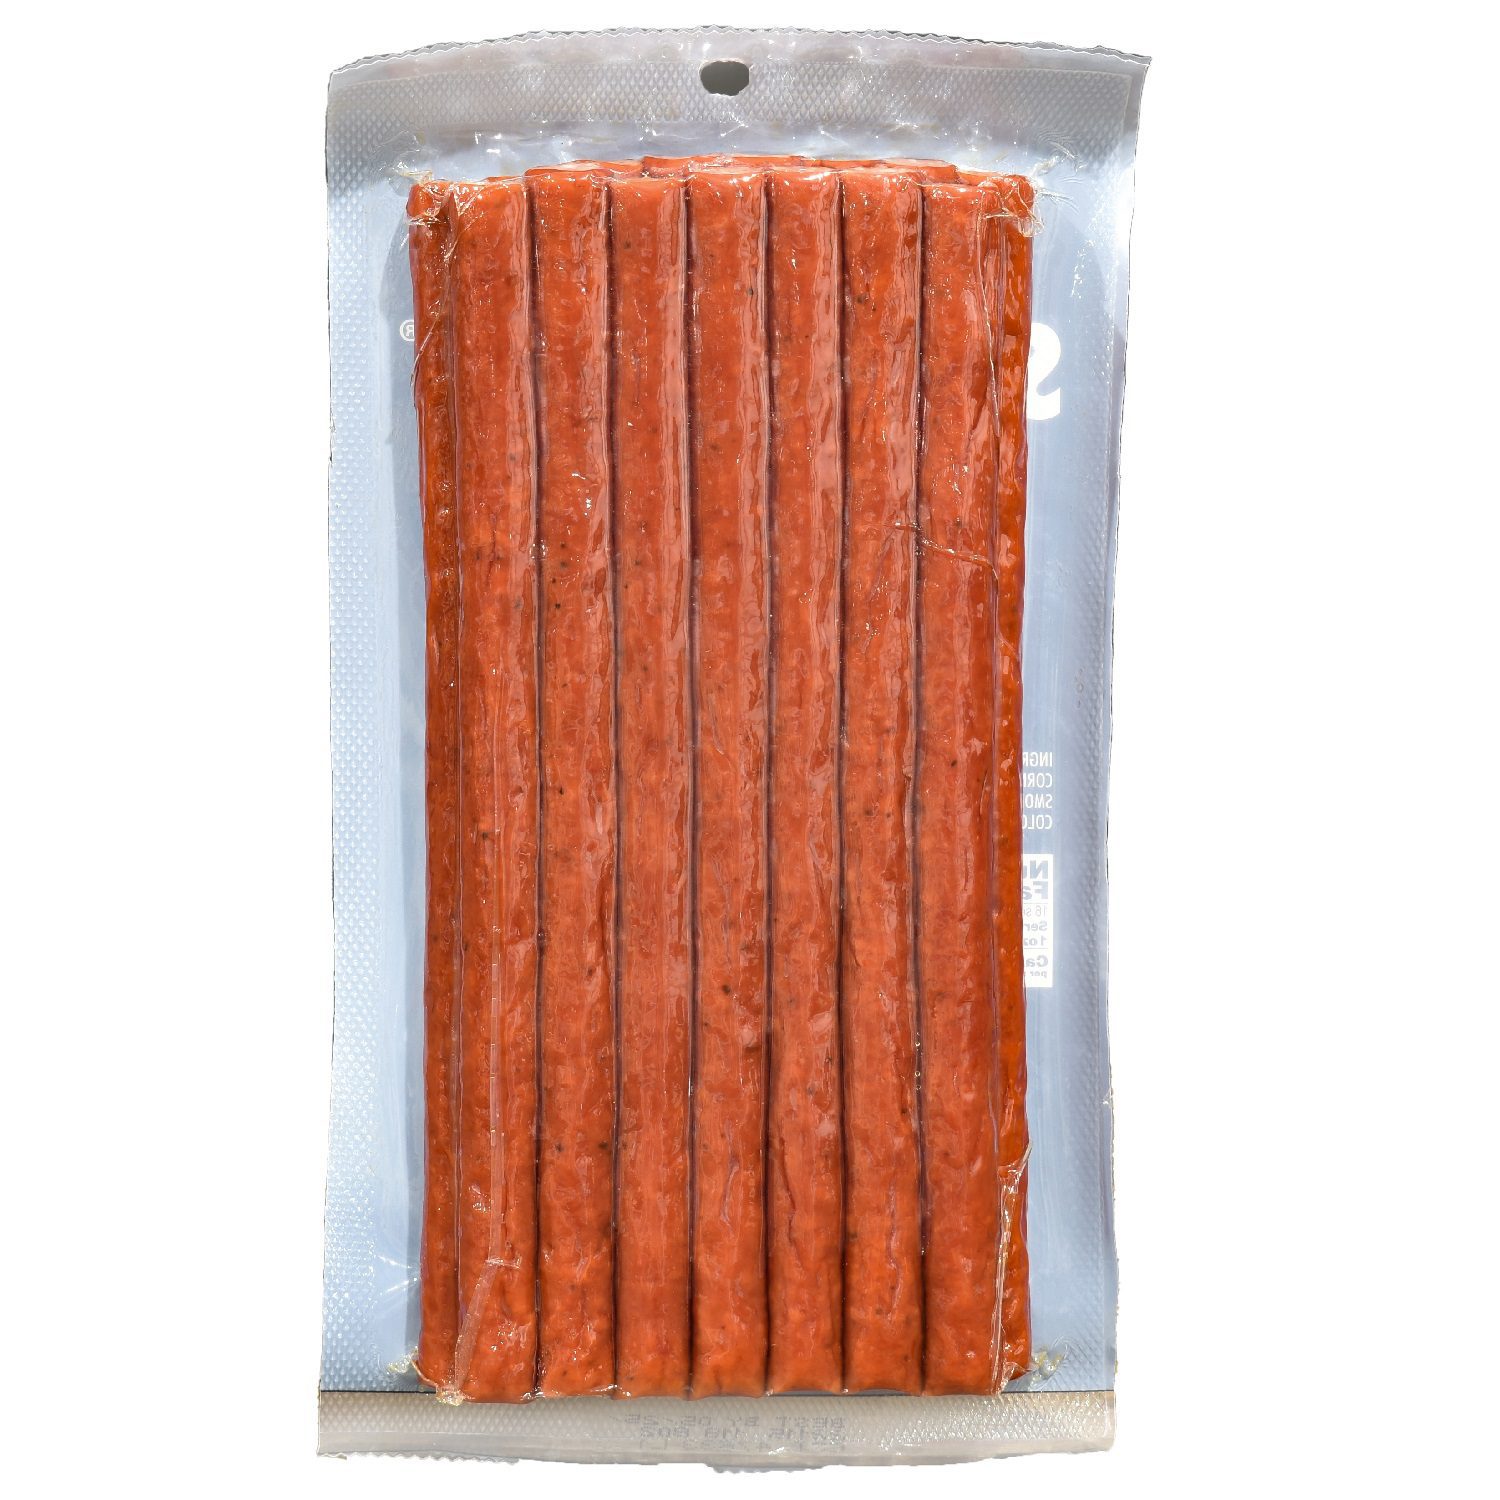 16 oz Meat Sticks Spicy Jalapeño - IOWA SMOKEHOUSE